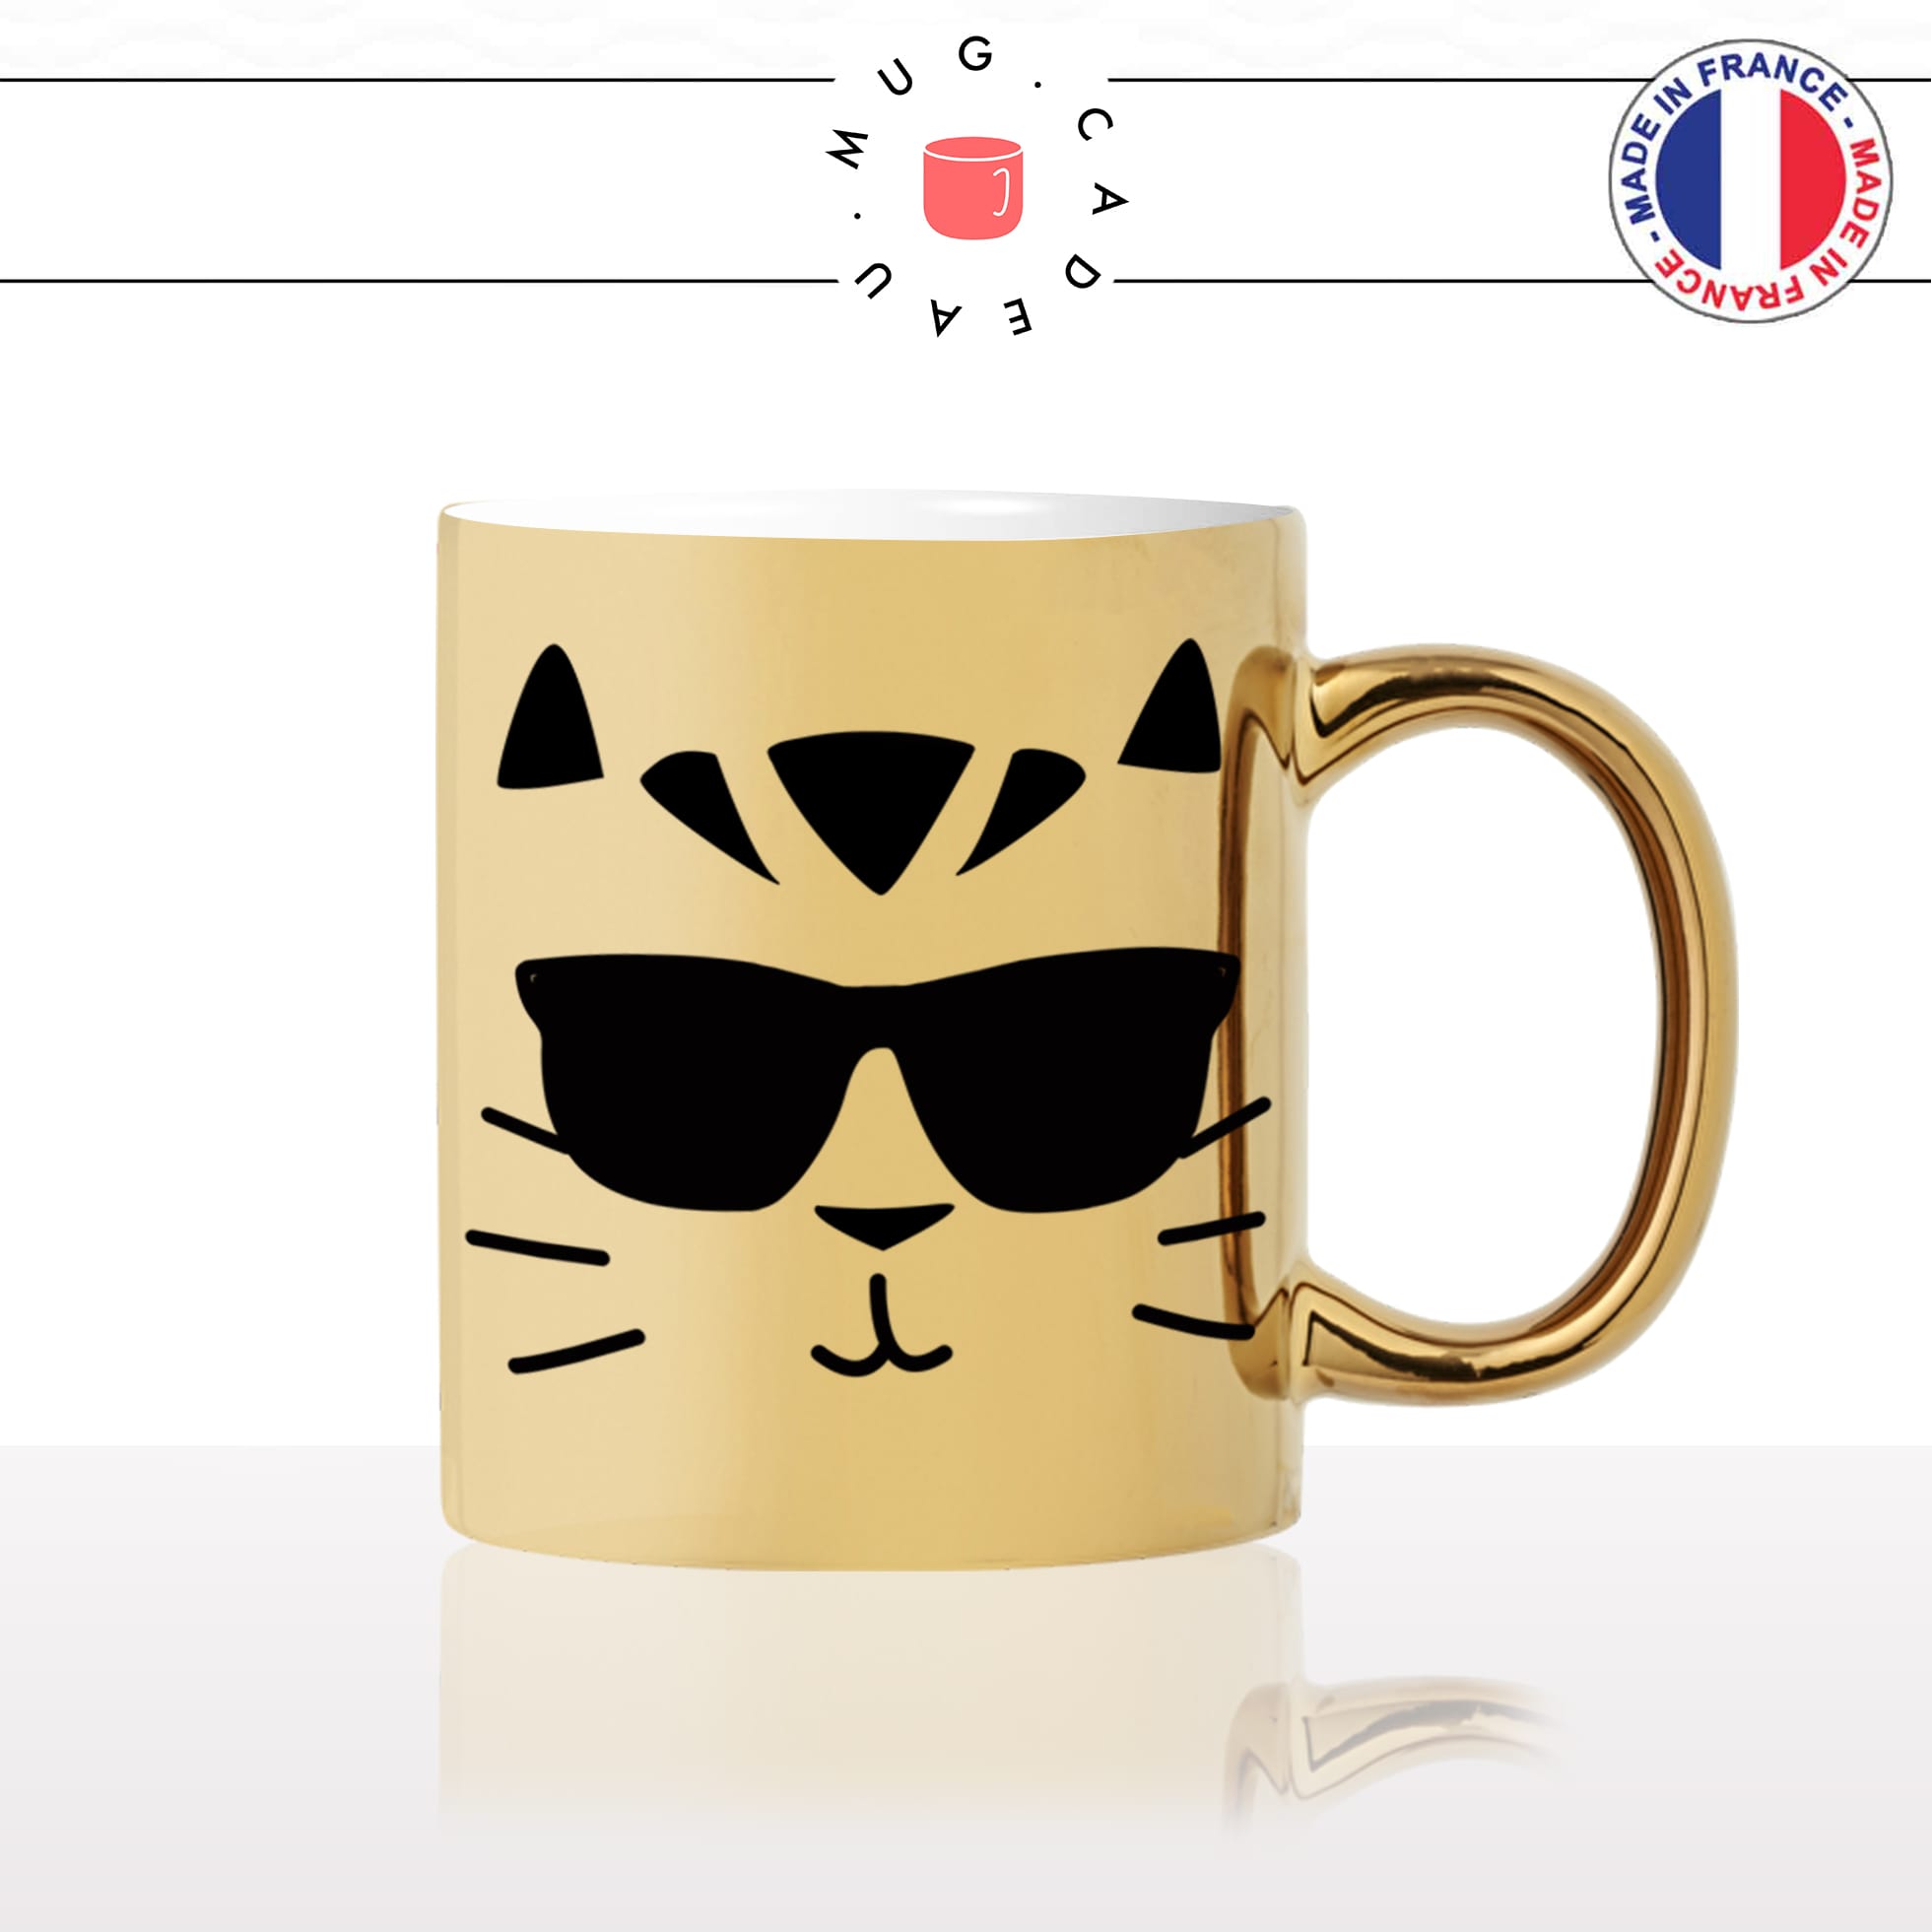 mug-tasse-or-doré-tete-de-chat-lunettes-de-soleil-cool-mignon-animal-chaton-noir-fun-café-thé-idée-cadeau-original-personnalisé-gold2-min